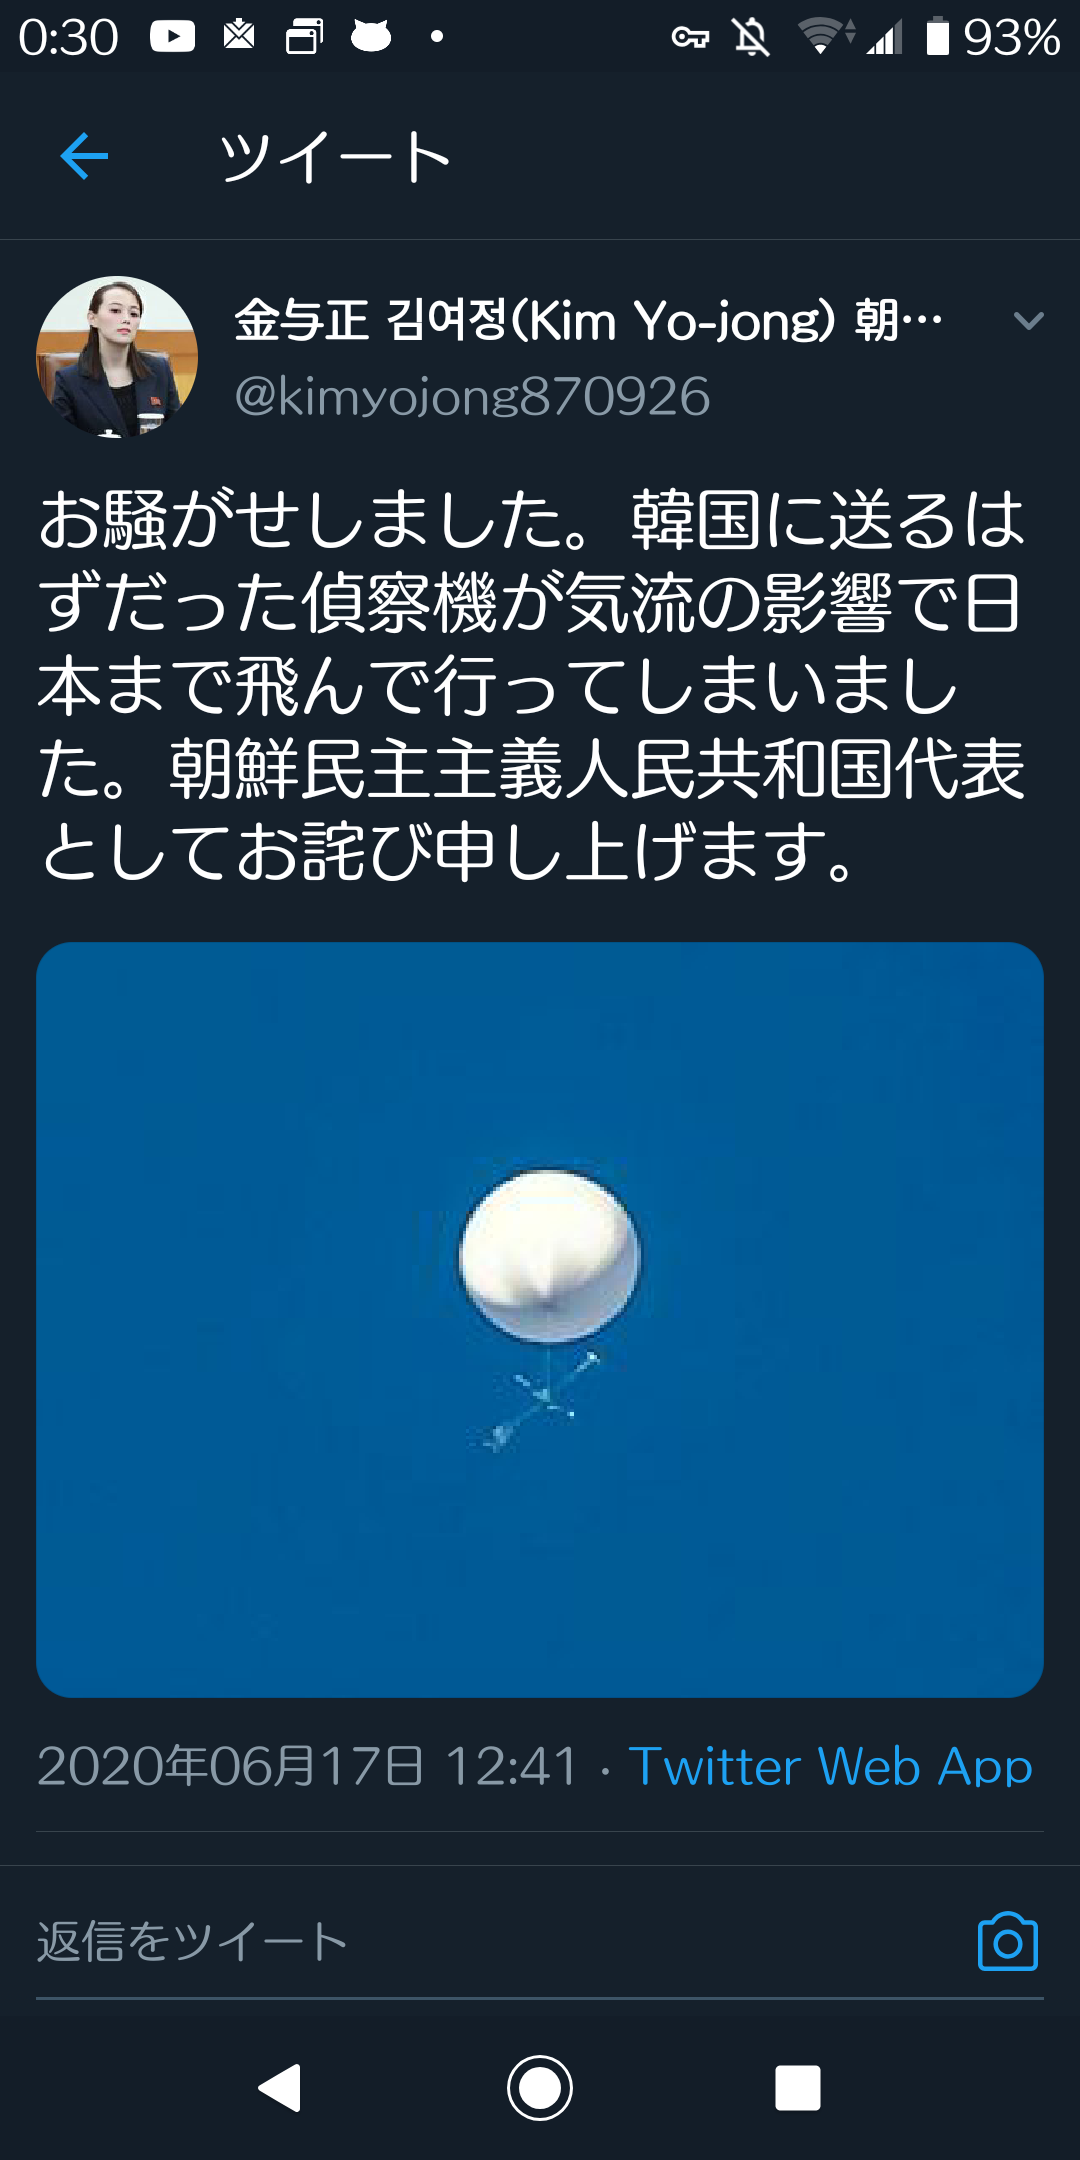 速報 仙台市上空で停止中のufoの正体は北朝鮮の偵察機だった ウソ